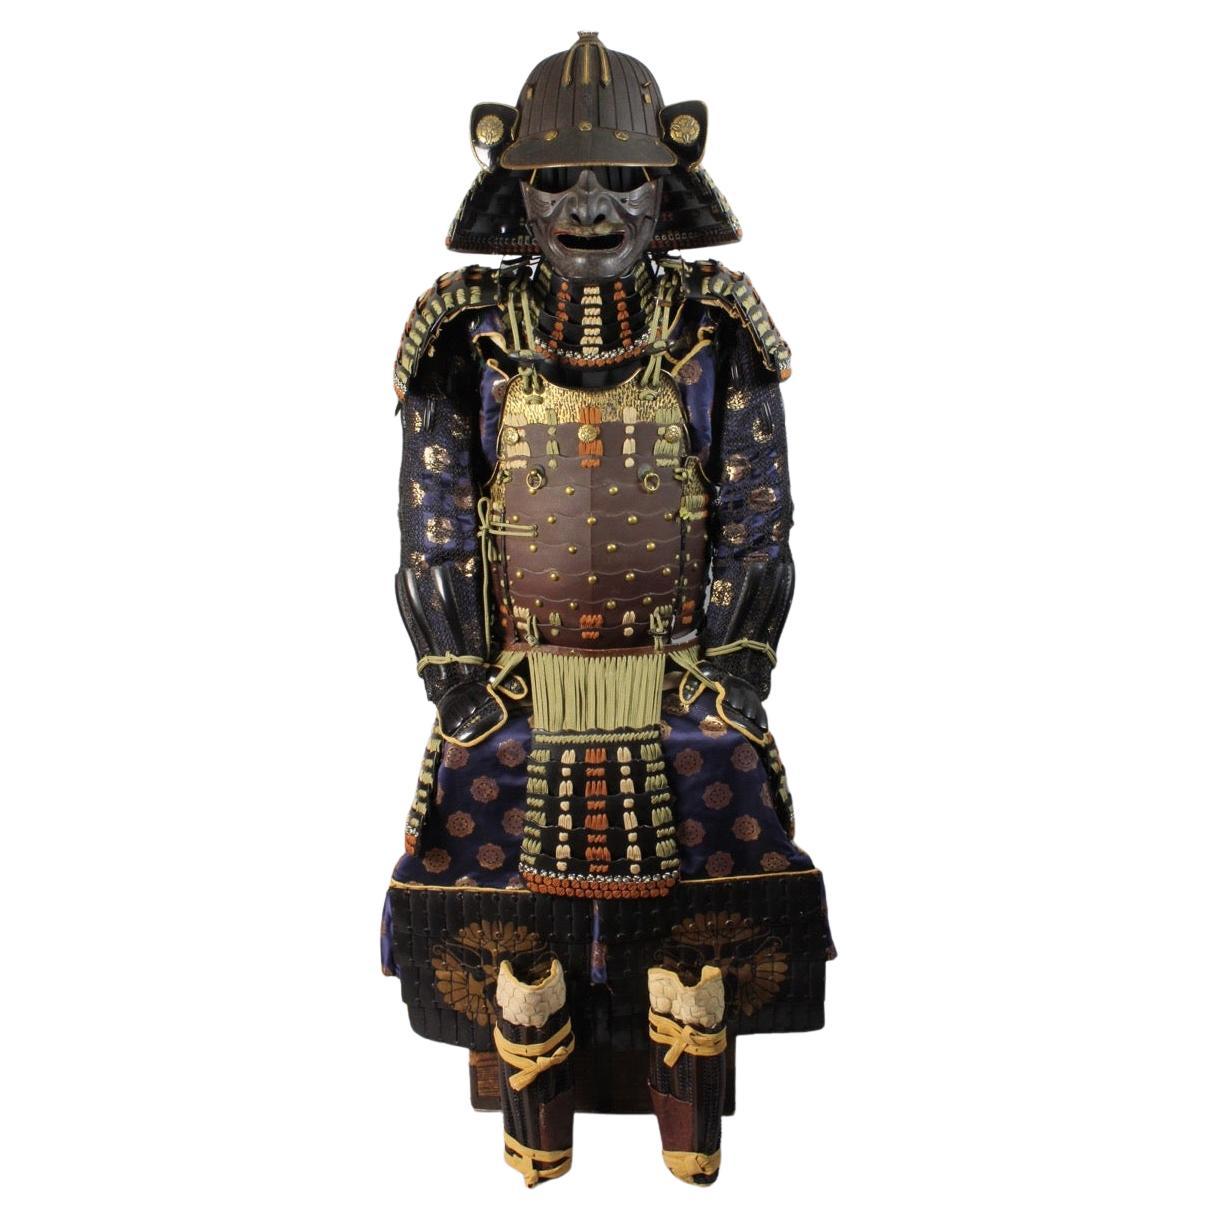 Zertifizierte Samurai-Armor (yoroi) aus dem 18. Jahrhundert (Edo-Periode) in außergewöhnlichem St. Preservati